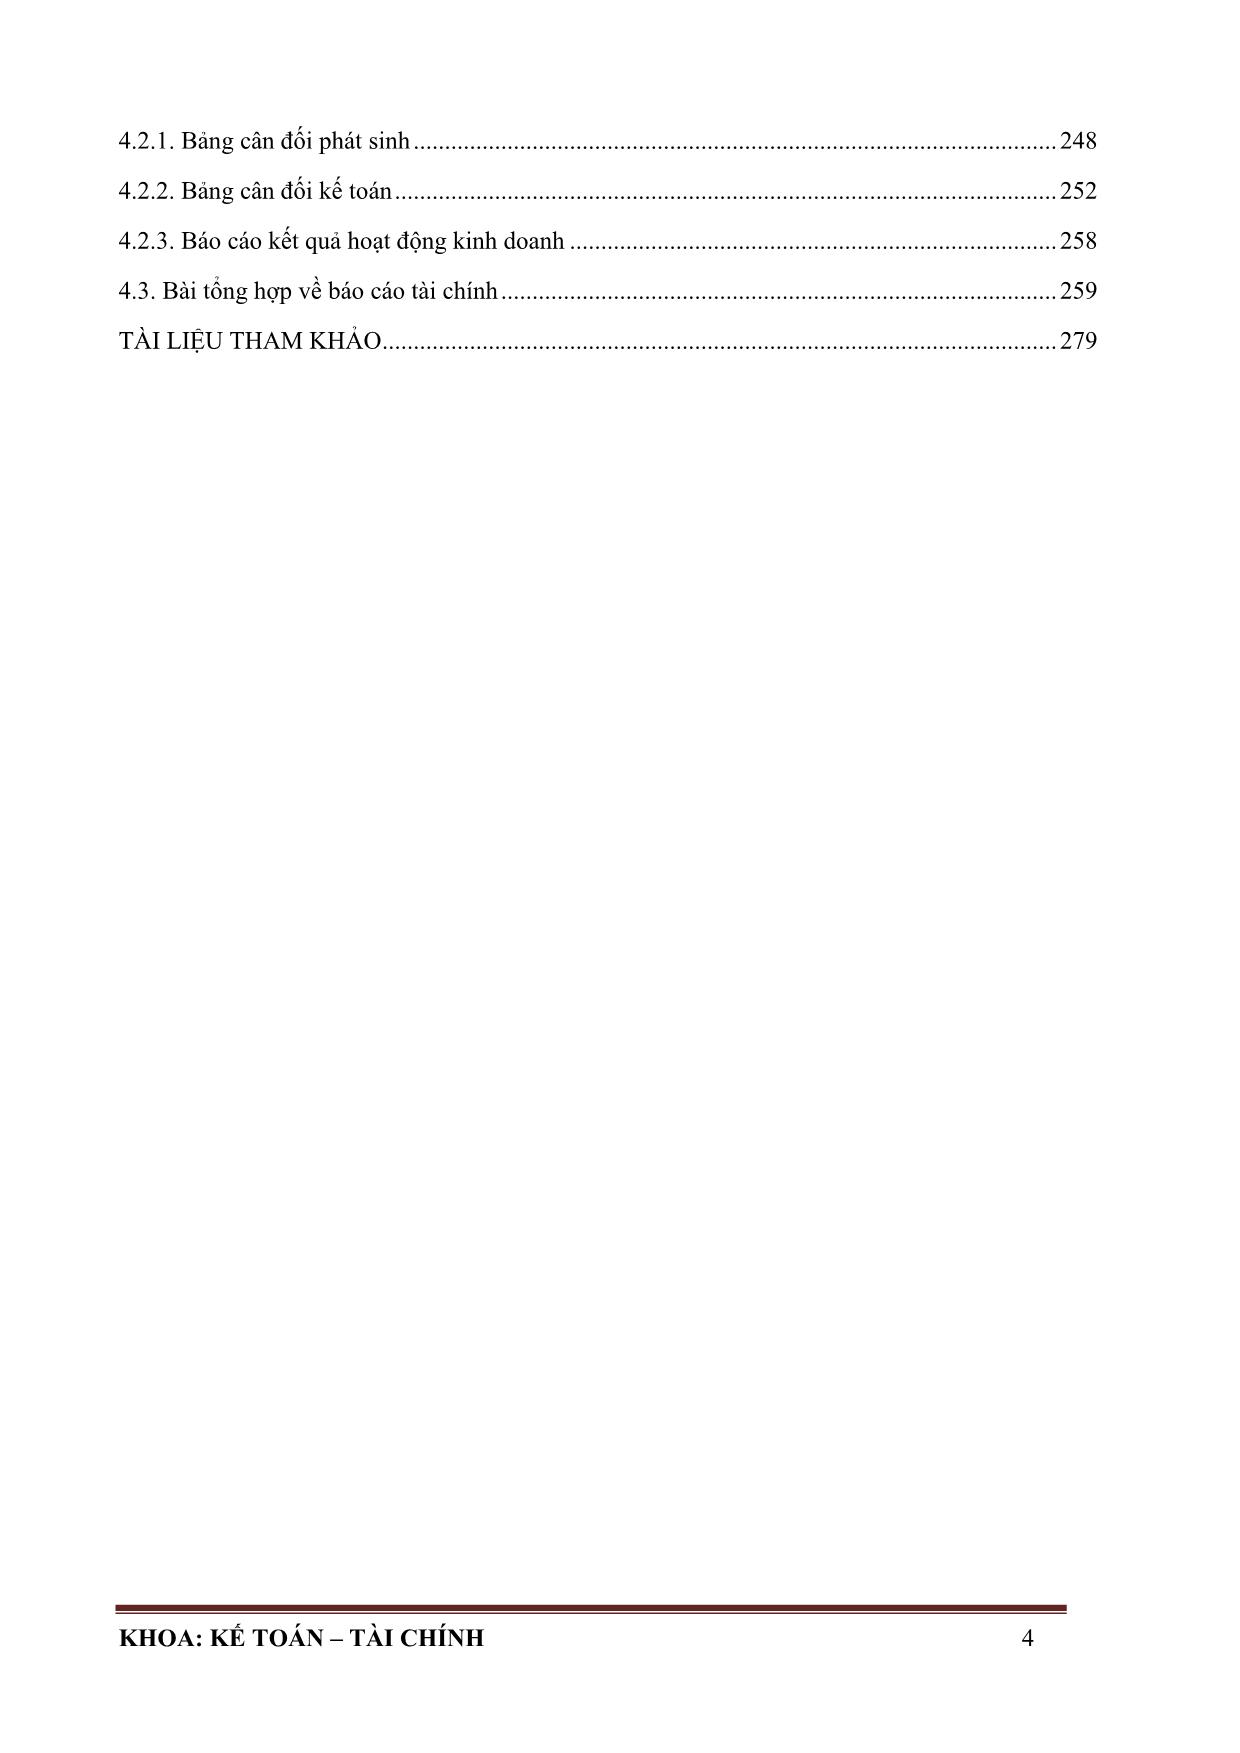 Giáo trình mô đun: Thực hành sổ sách kế toán trang 8